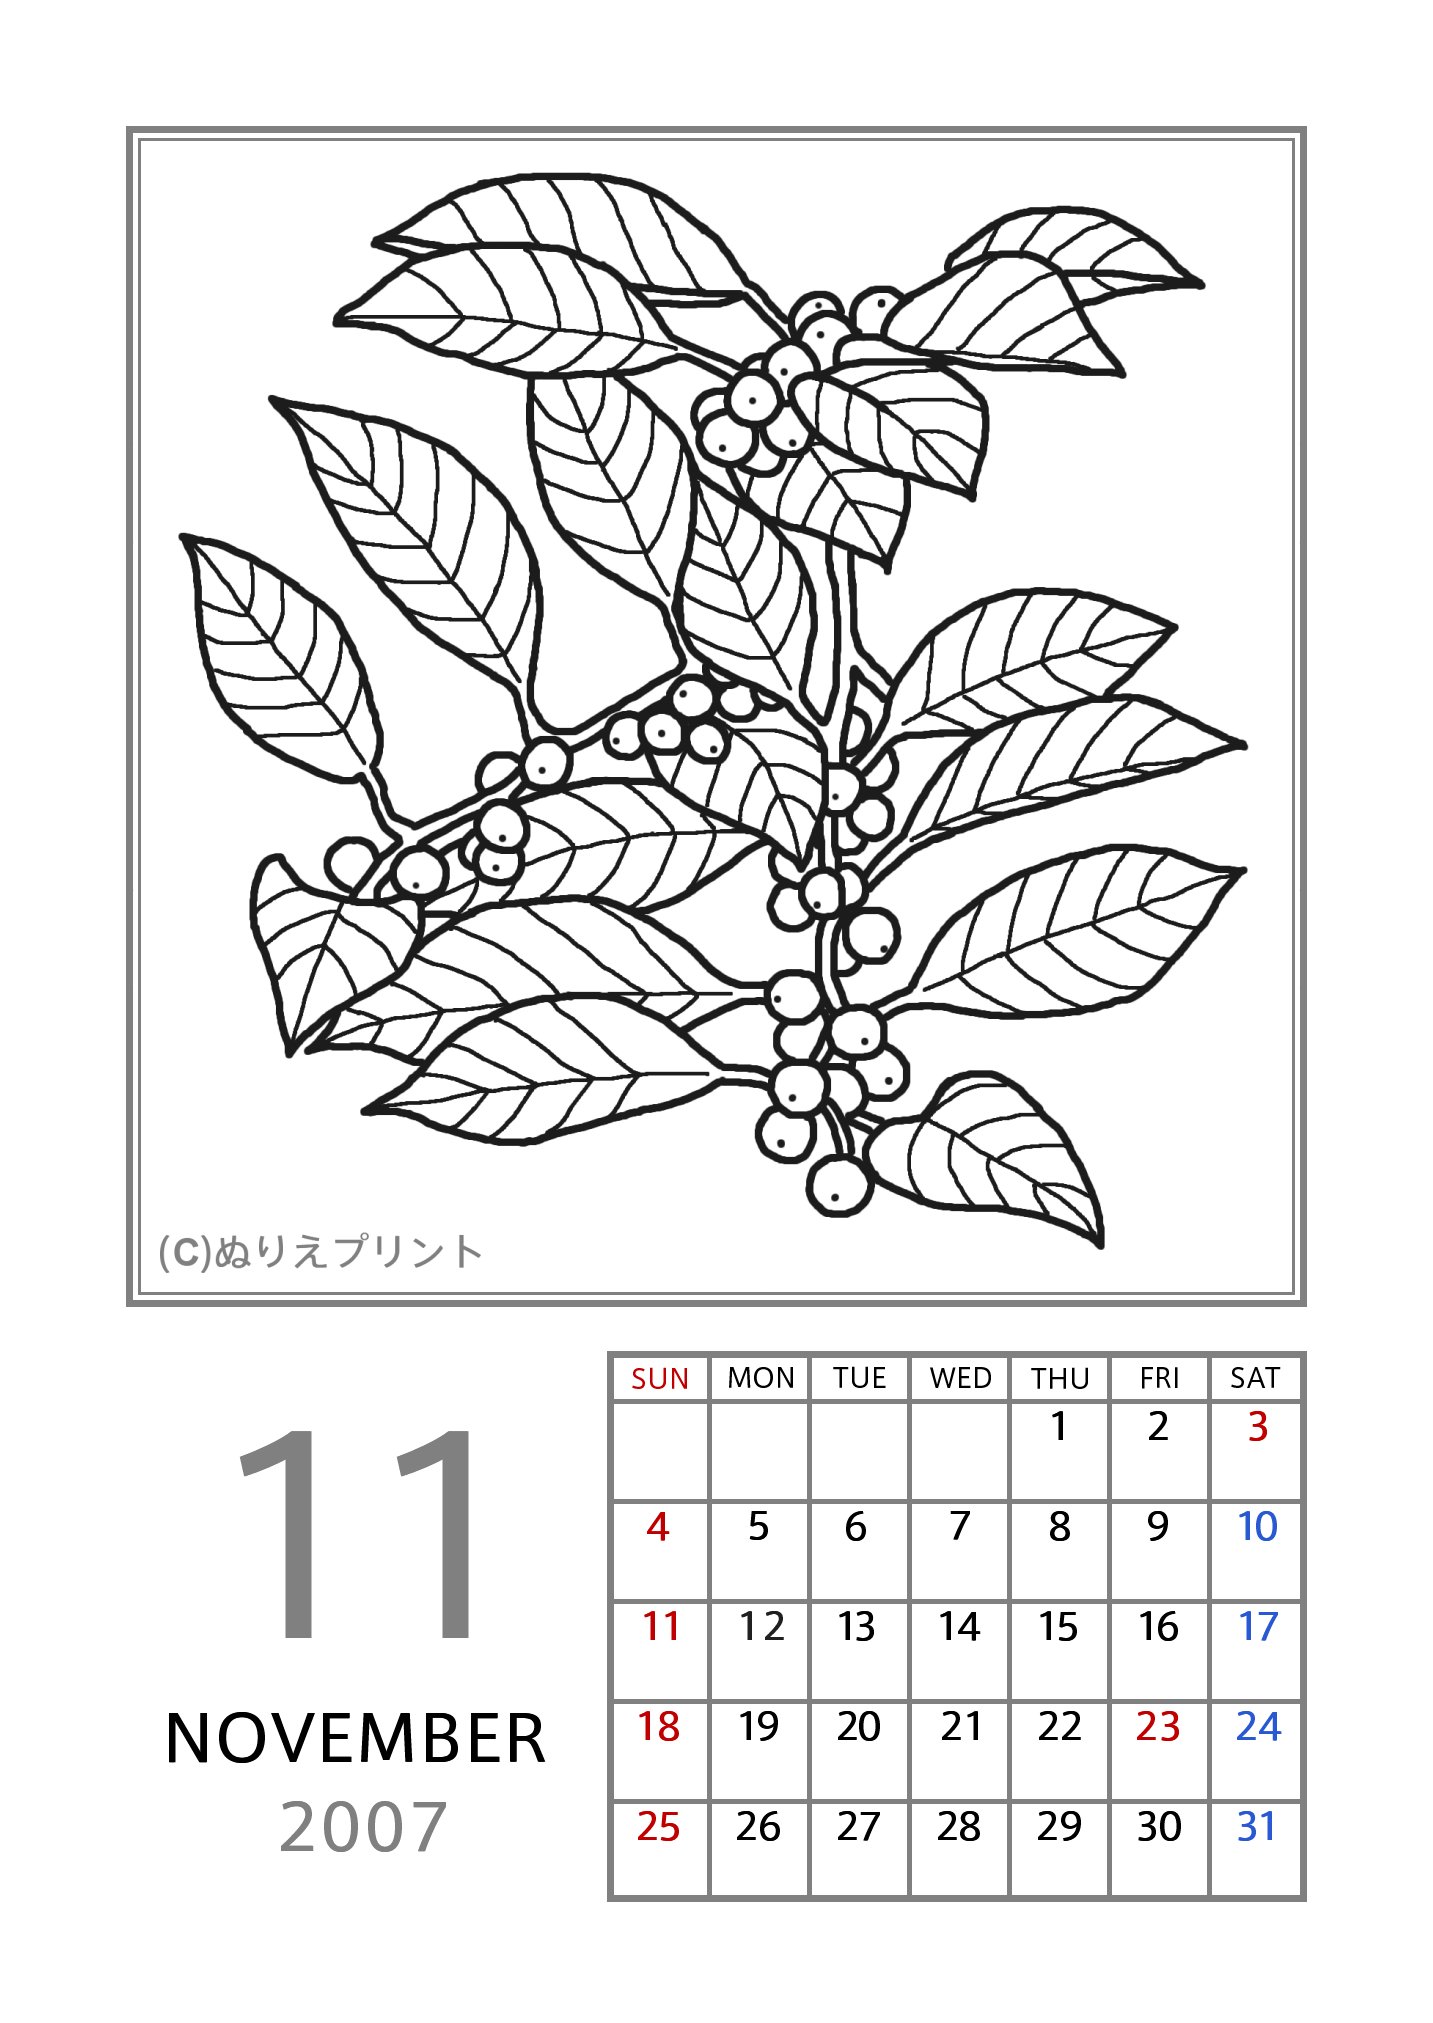 無料の塗り絵 花のぬりえカレンダー07 平成19年 11月 ウメモドキ ぬりえイラスト